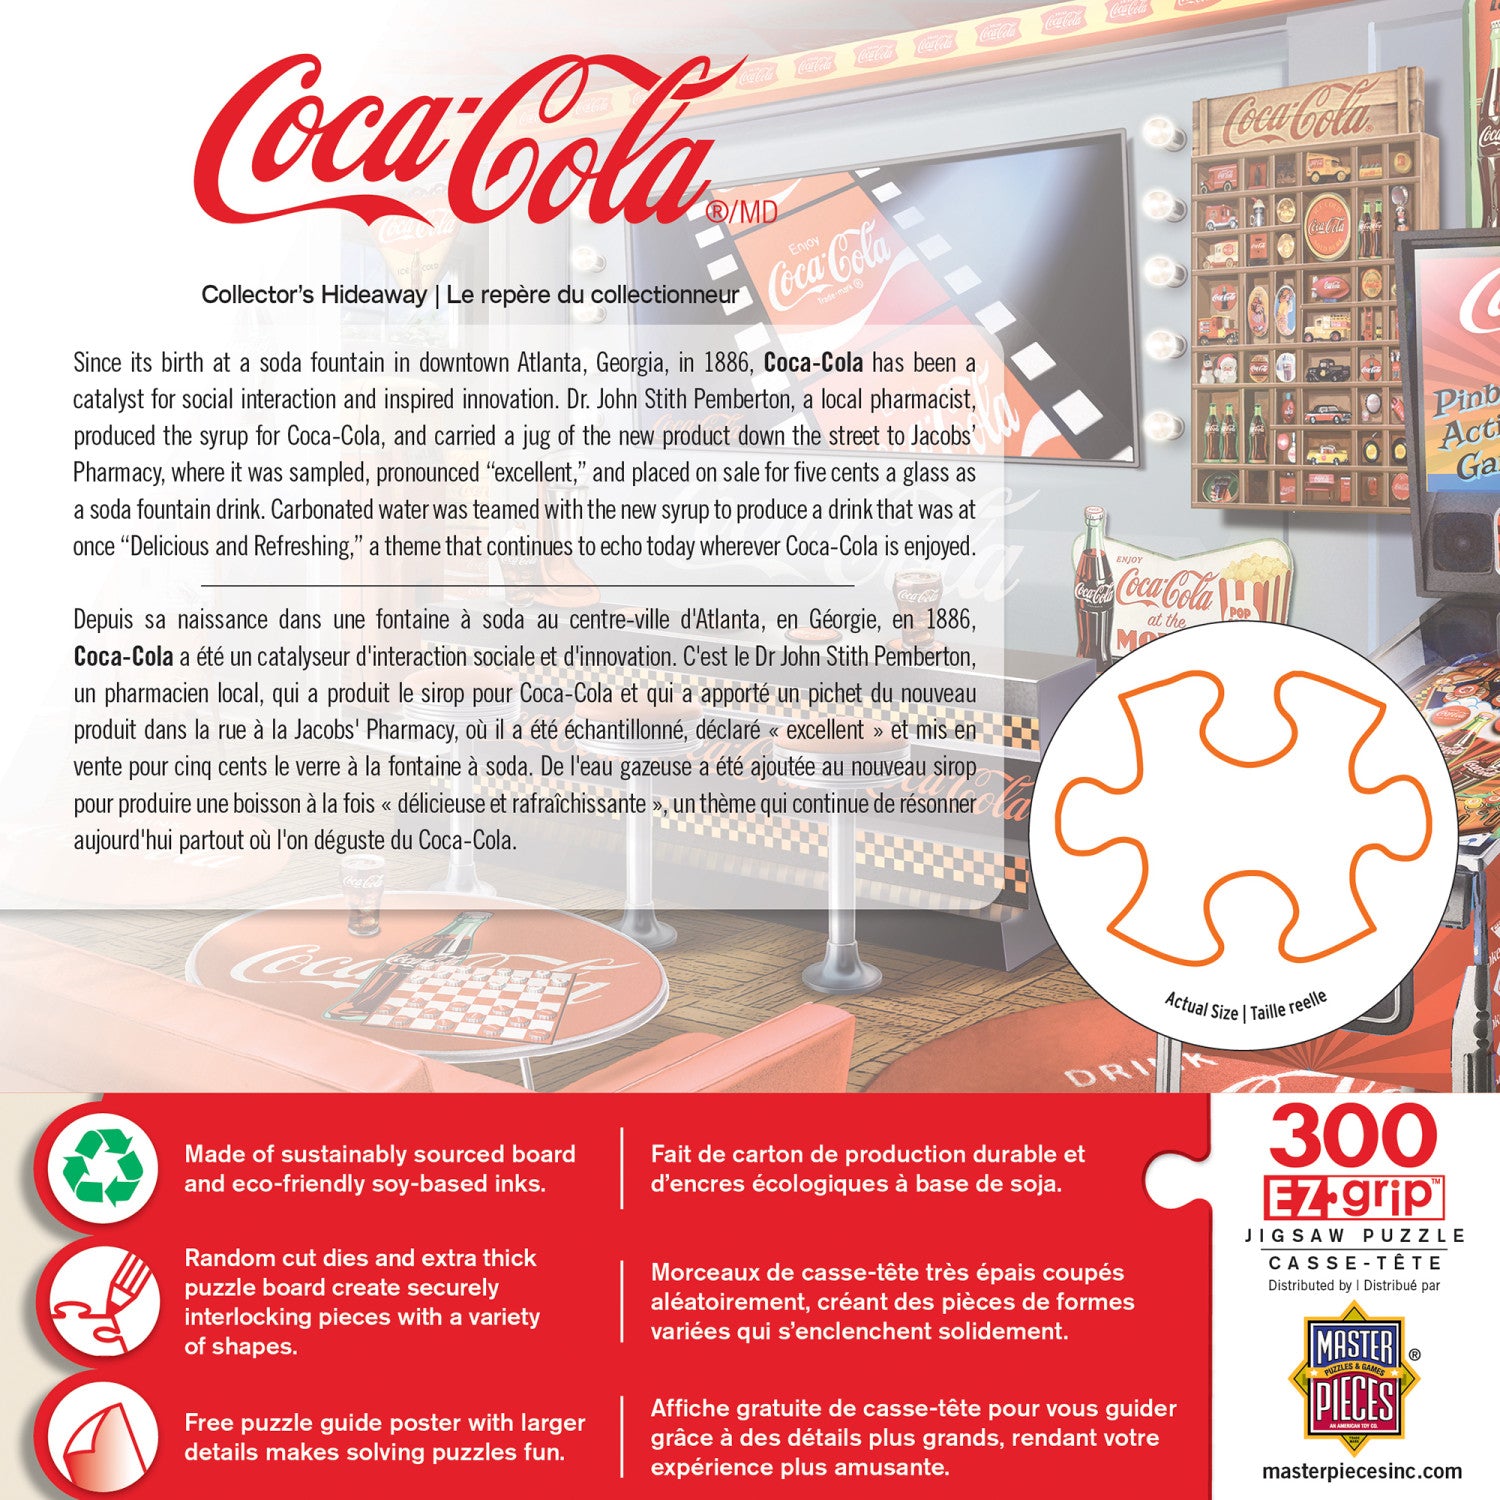 Coca-Cola - Collector's Hideaway 300 Piece Puzzle